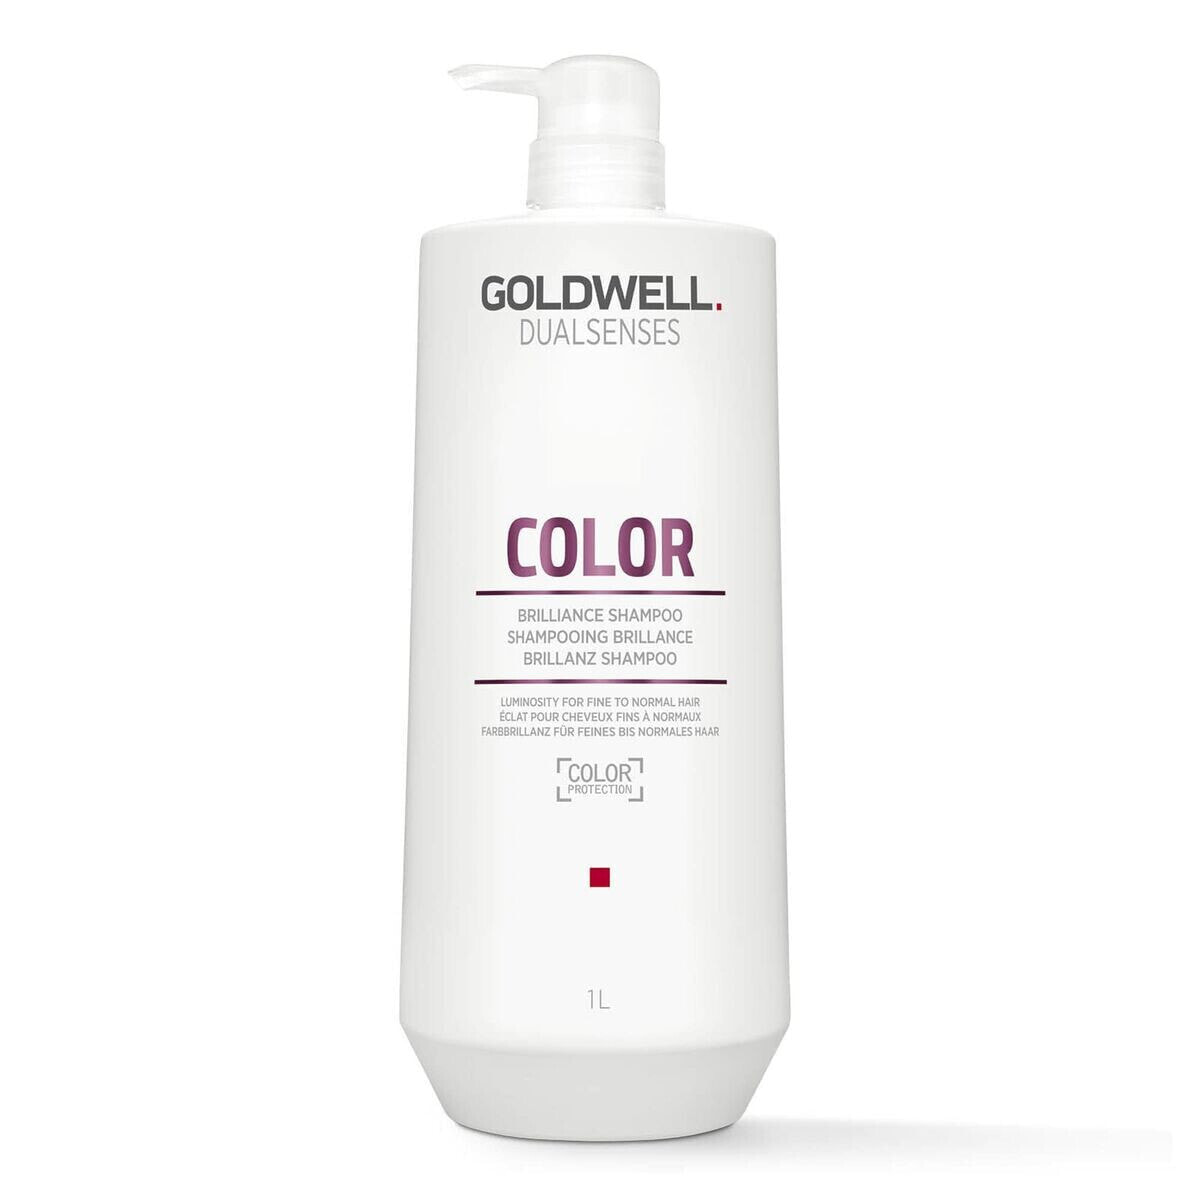 Colour Revitalizing Shampoo Goldwell Dualsenses Color 1 L